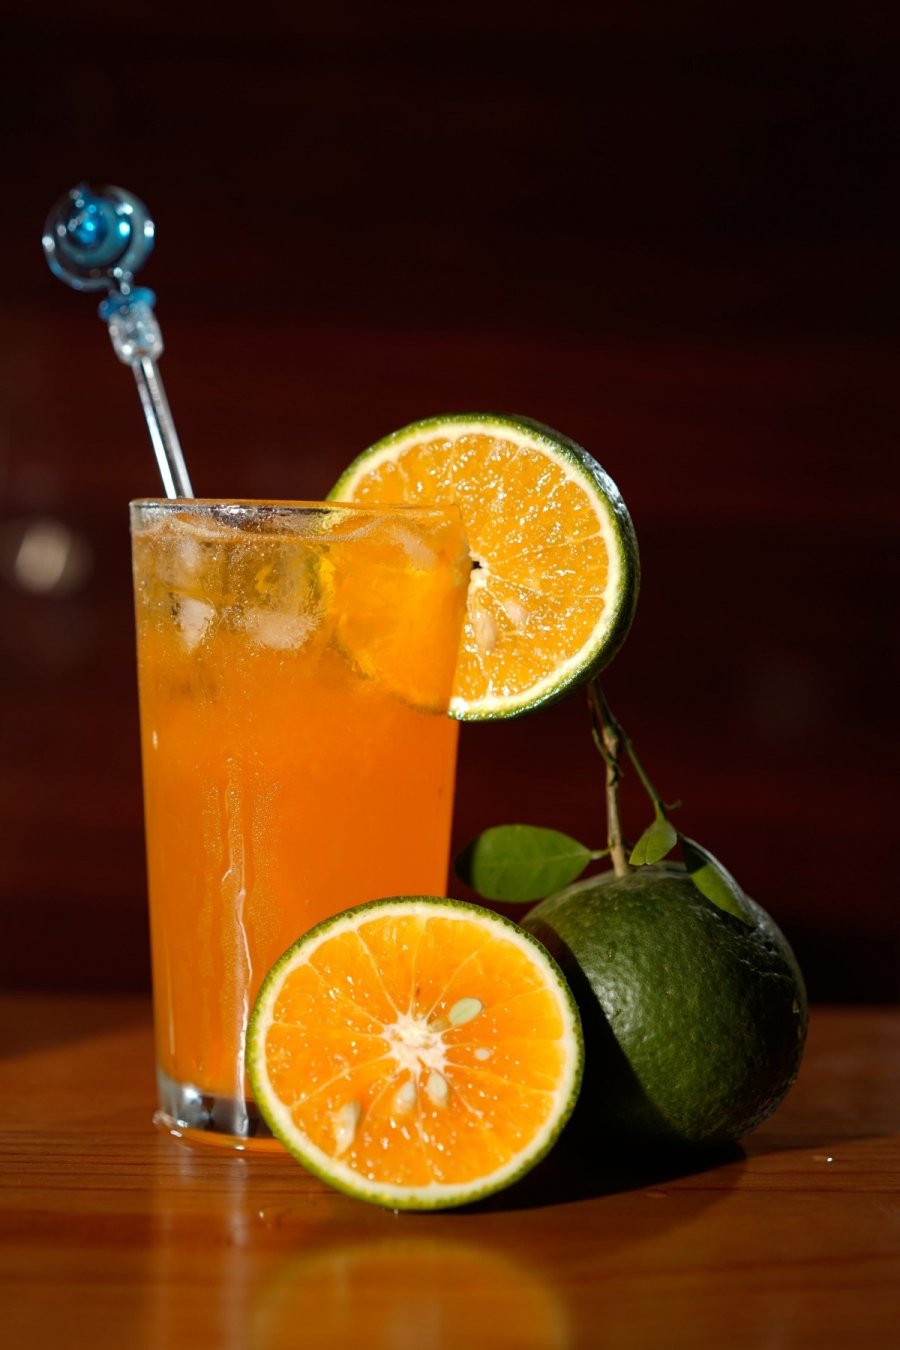 Uống nước cam cứ chọn đúng 2 giờ vàng trong ngày để hấp thụ hết vitamin C, không hại dạ dày-3